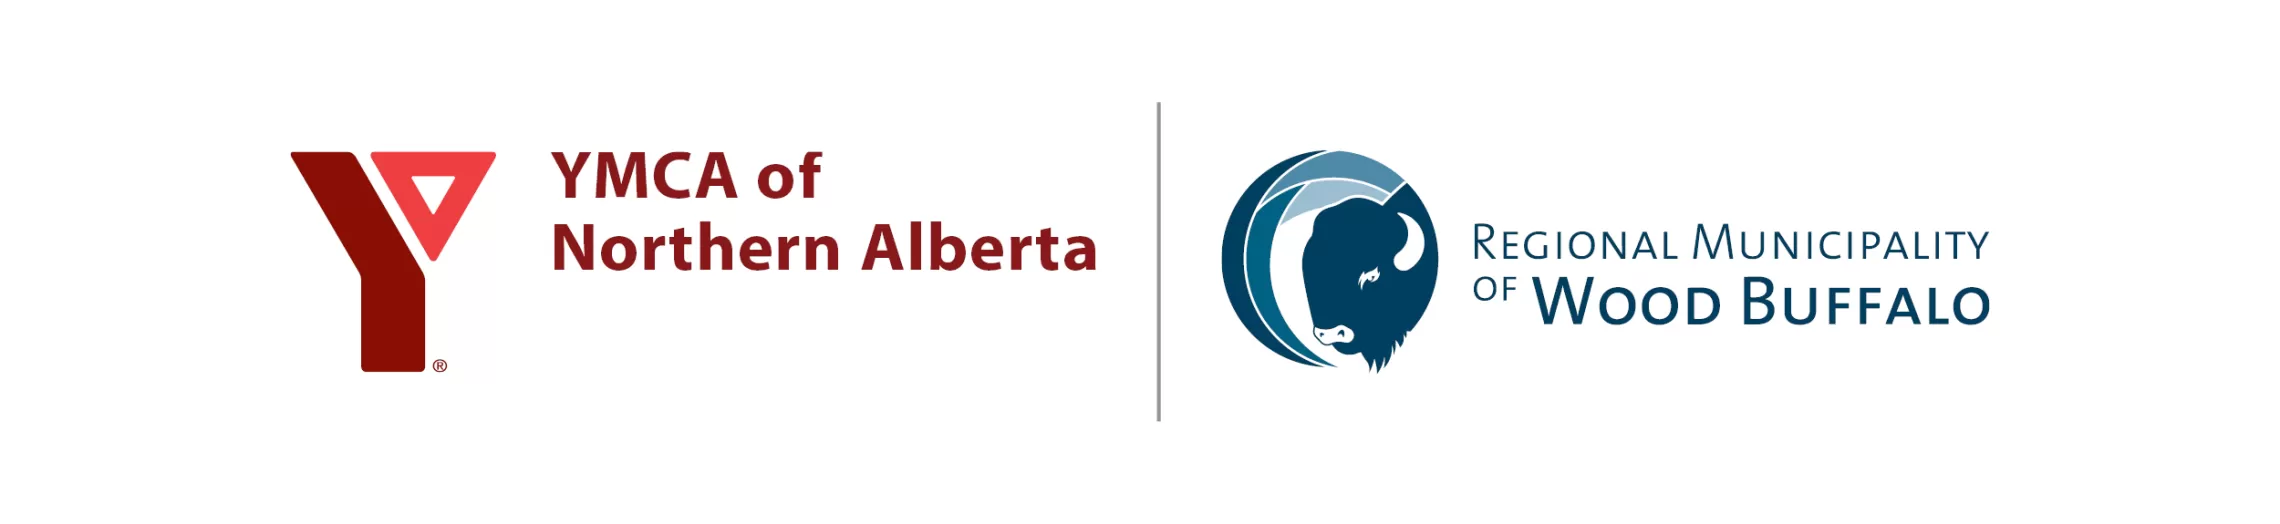 YMCA of Northern Alberta and Regional Municipality of Wood Buffalo logos.